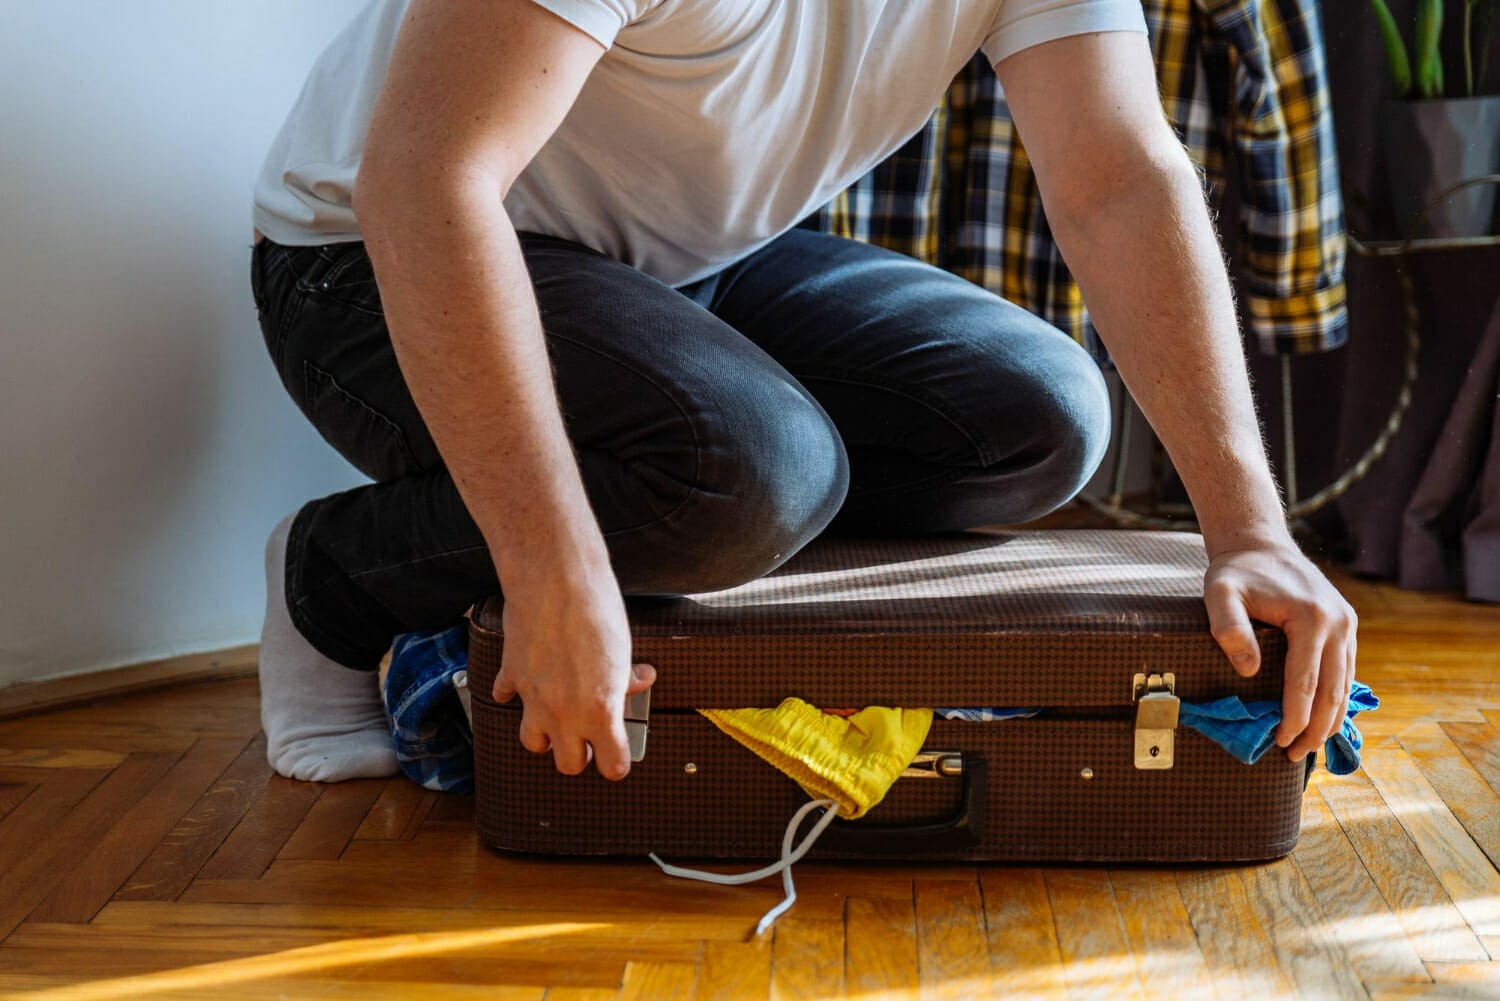 Lire la suite à propos de l’article Les astuces pratiques pour bien ranger sa valise rigide pour la soute